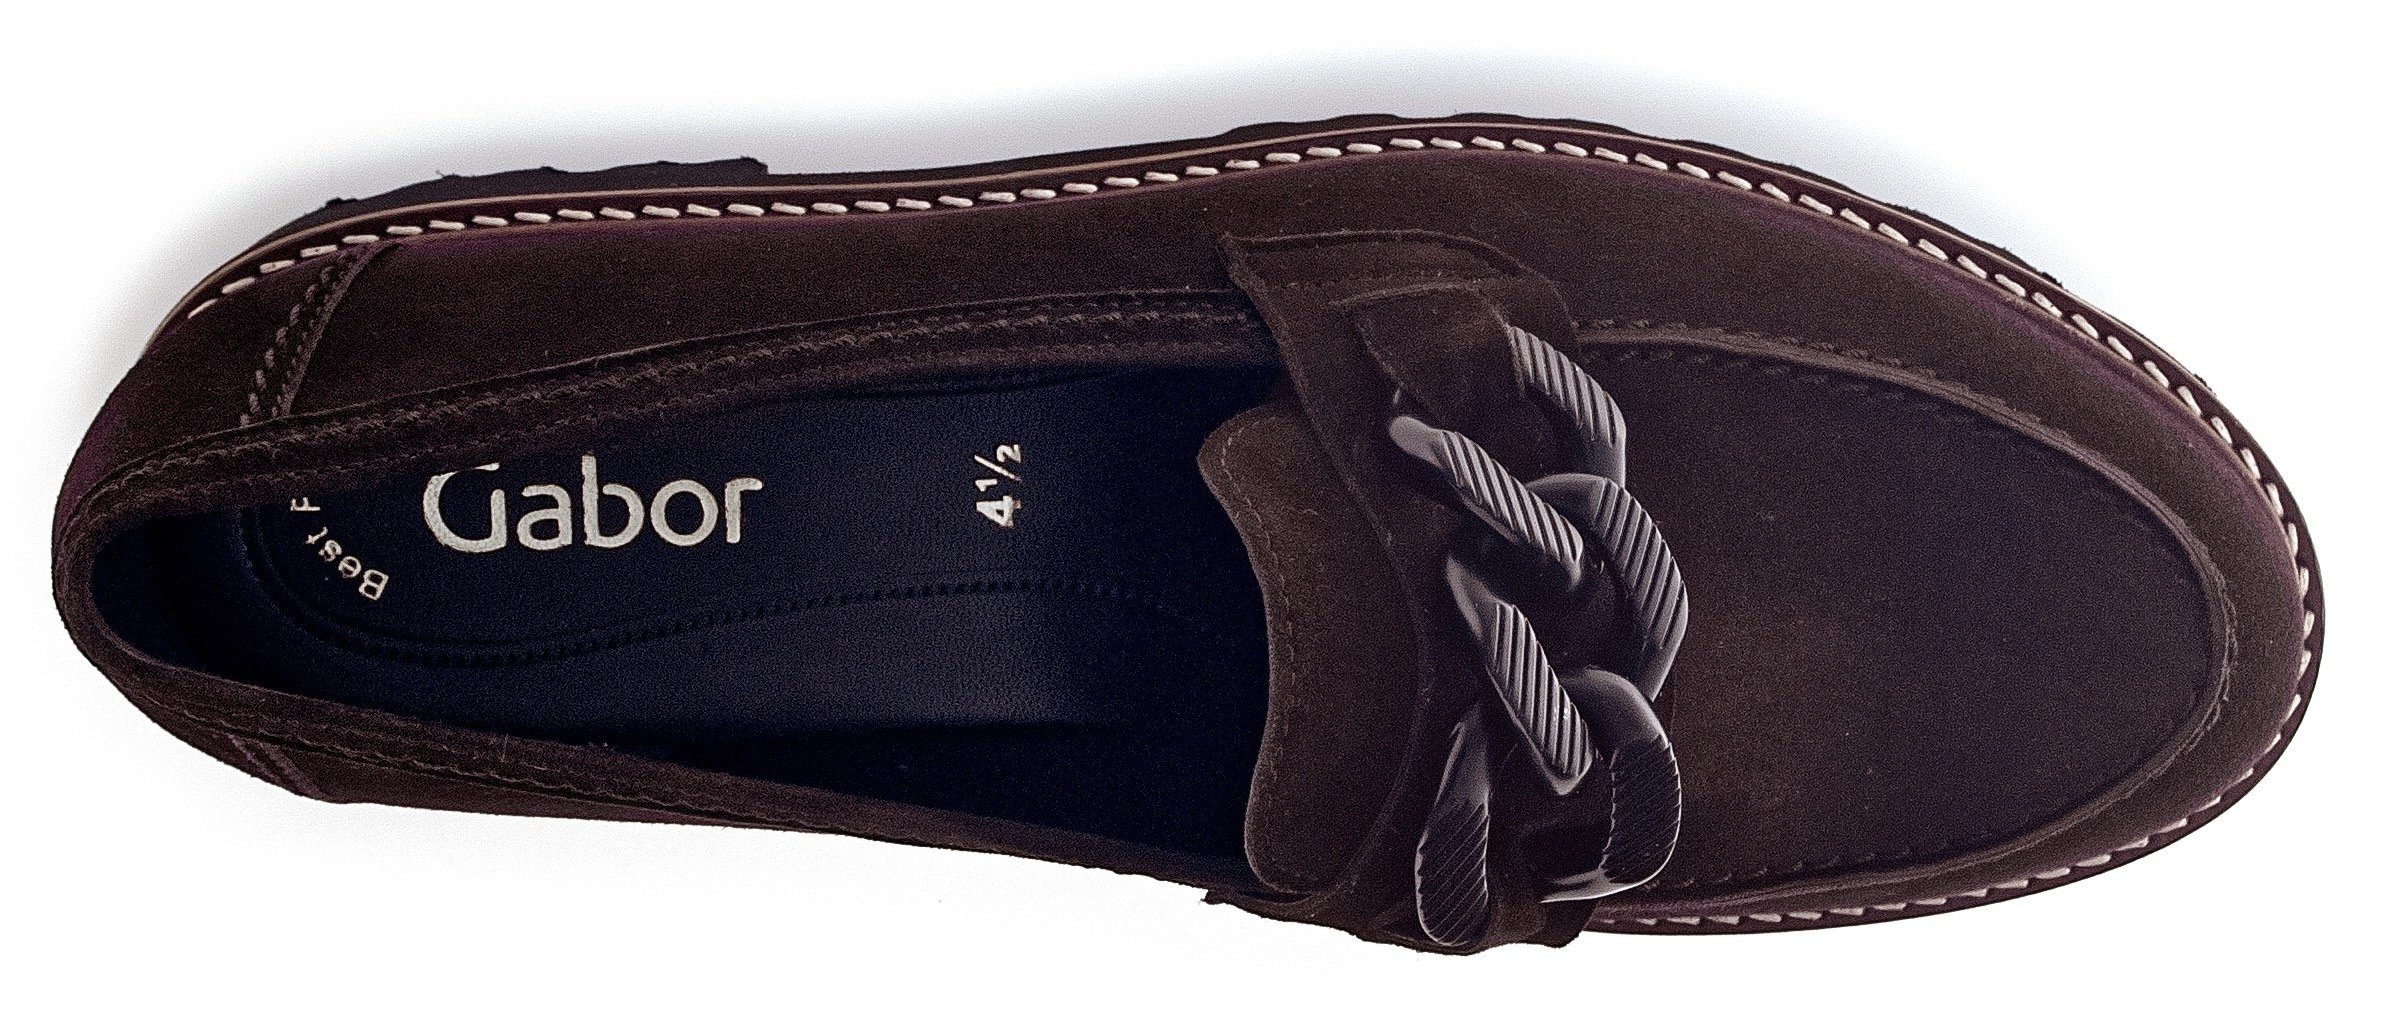 Fitting-Ausstattung Slipper mit dunkelbraun-schwarz Gabor Best